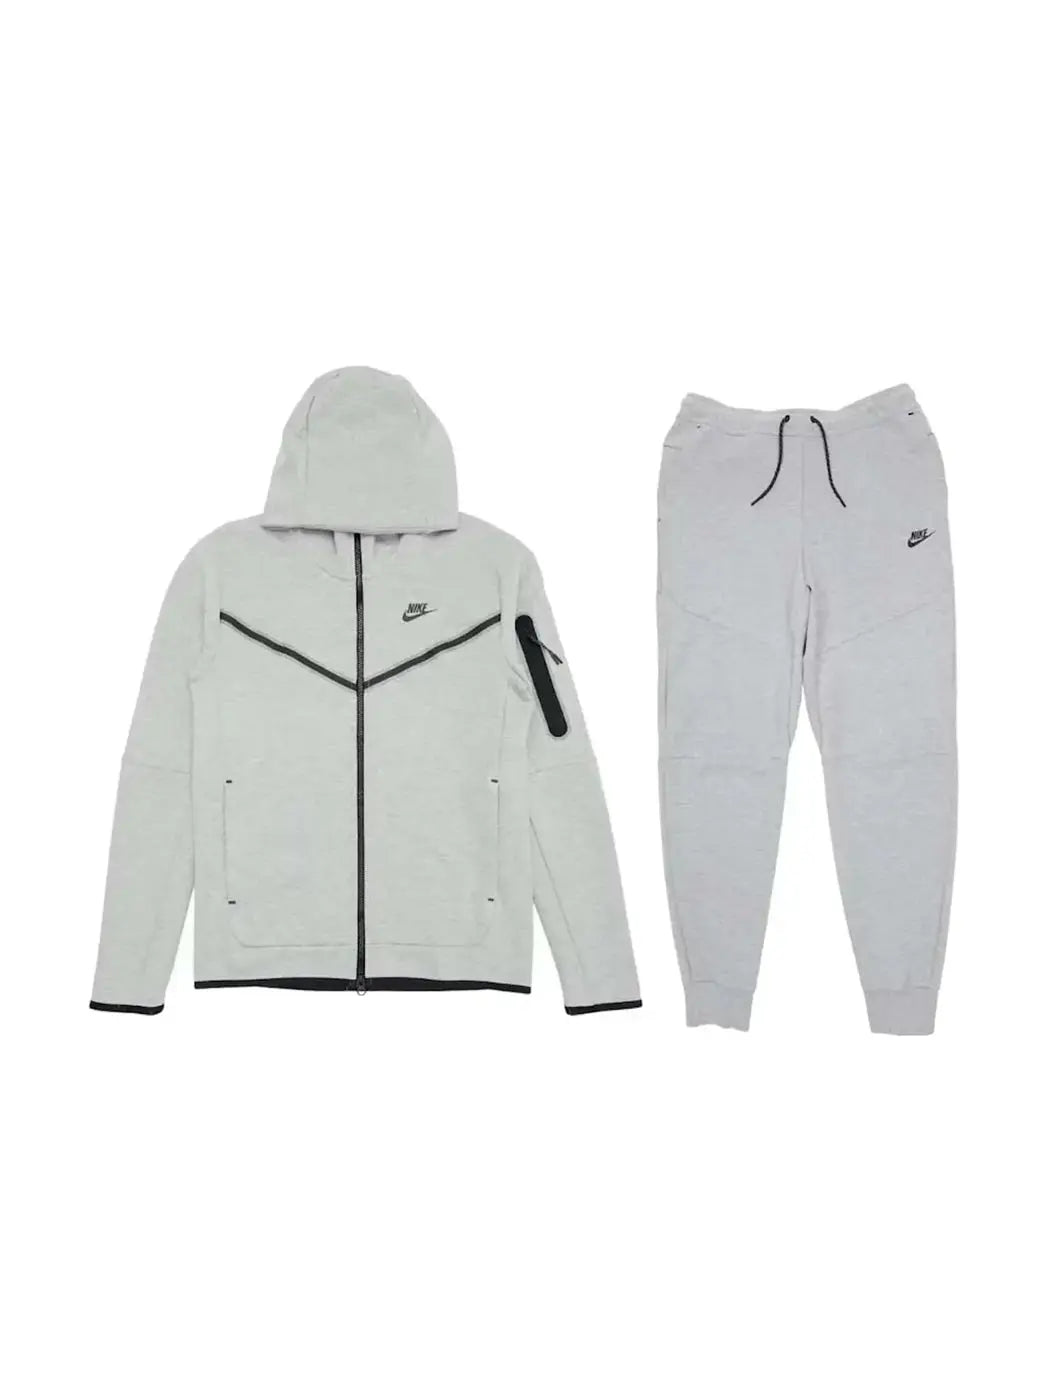 Nike Sportswear Tech Fleece Full Zip Hoodie & Joggers Set Grey in Melbourne, Australia - Prior